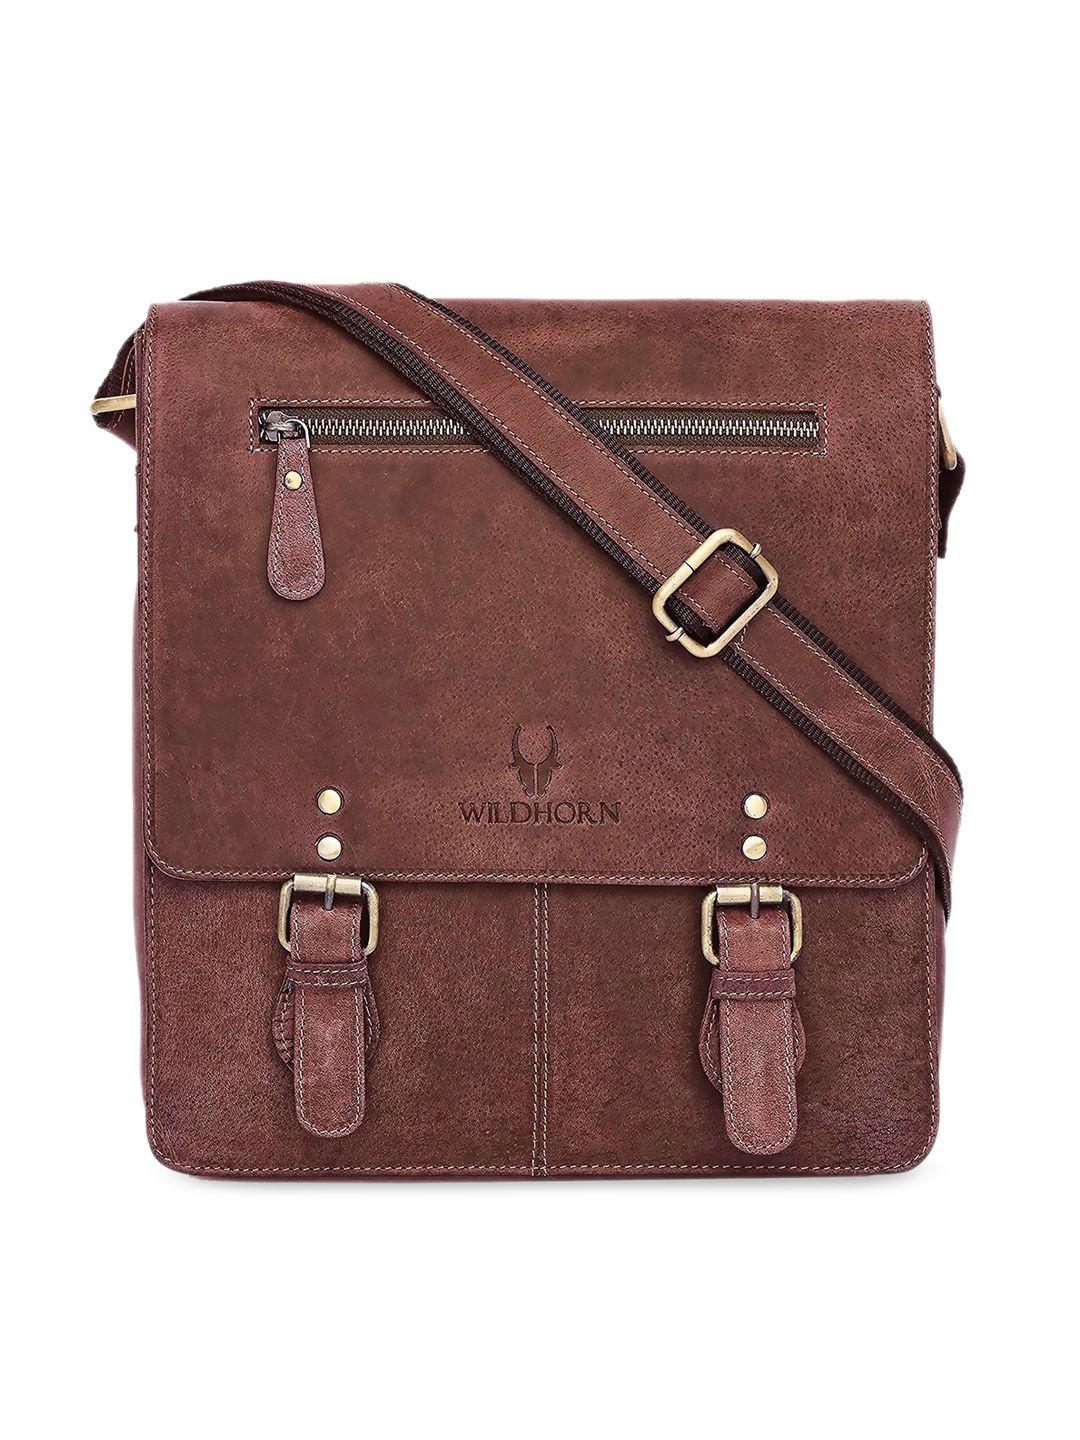 wildhorn men brown leather structured sling bag